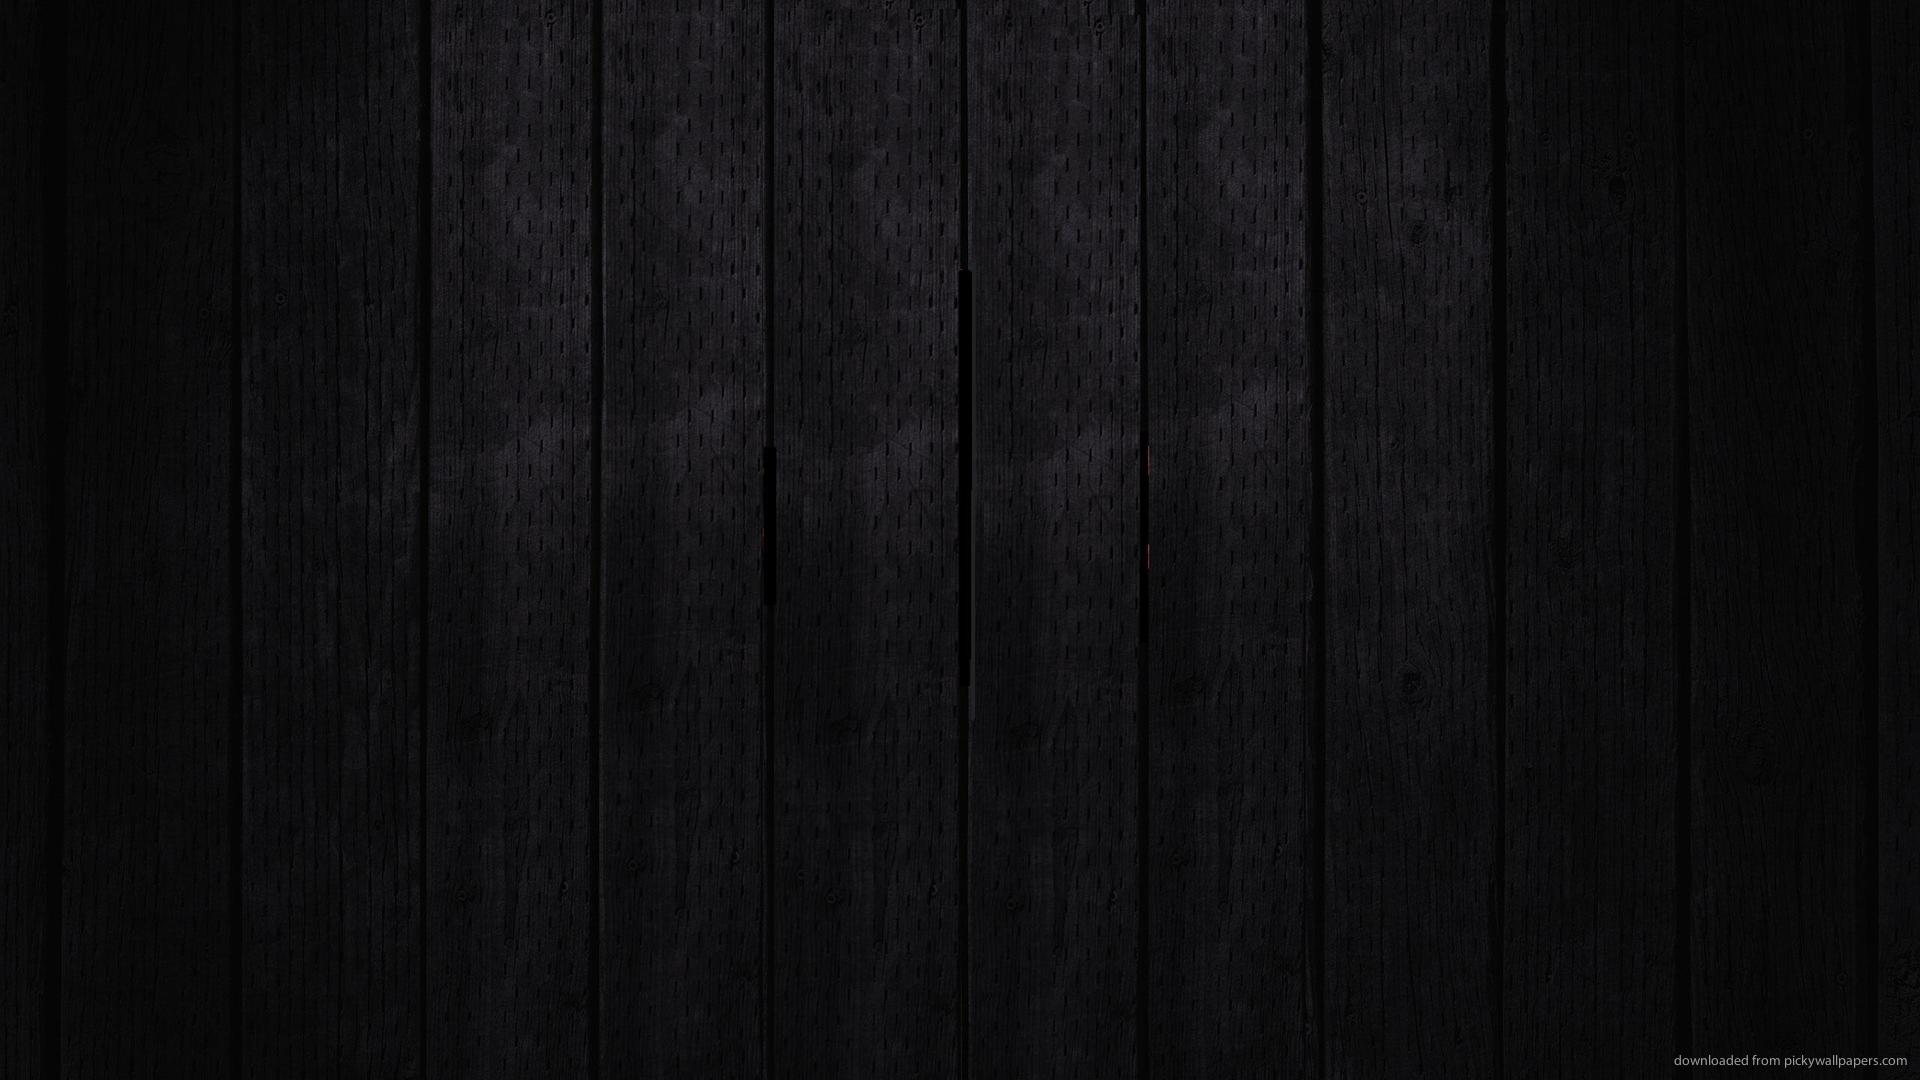 Họa tiết gỗ đen là sự lựa chọn hoàn hảo cho những ai yêu thích kiểu dáng cổ điển và độc đáo. Với họa tiết đầy sáng tạo và bền vững, bạn sẽ thật sự hài lòng khi sử dụng những sản phẩm từ loại gỗ này.